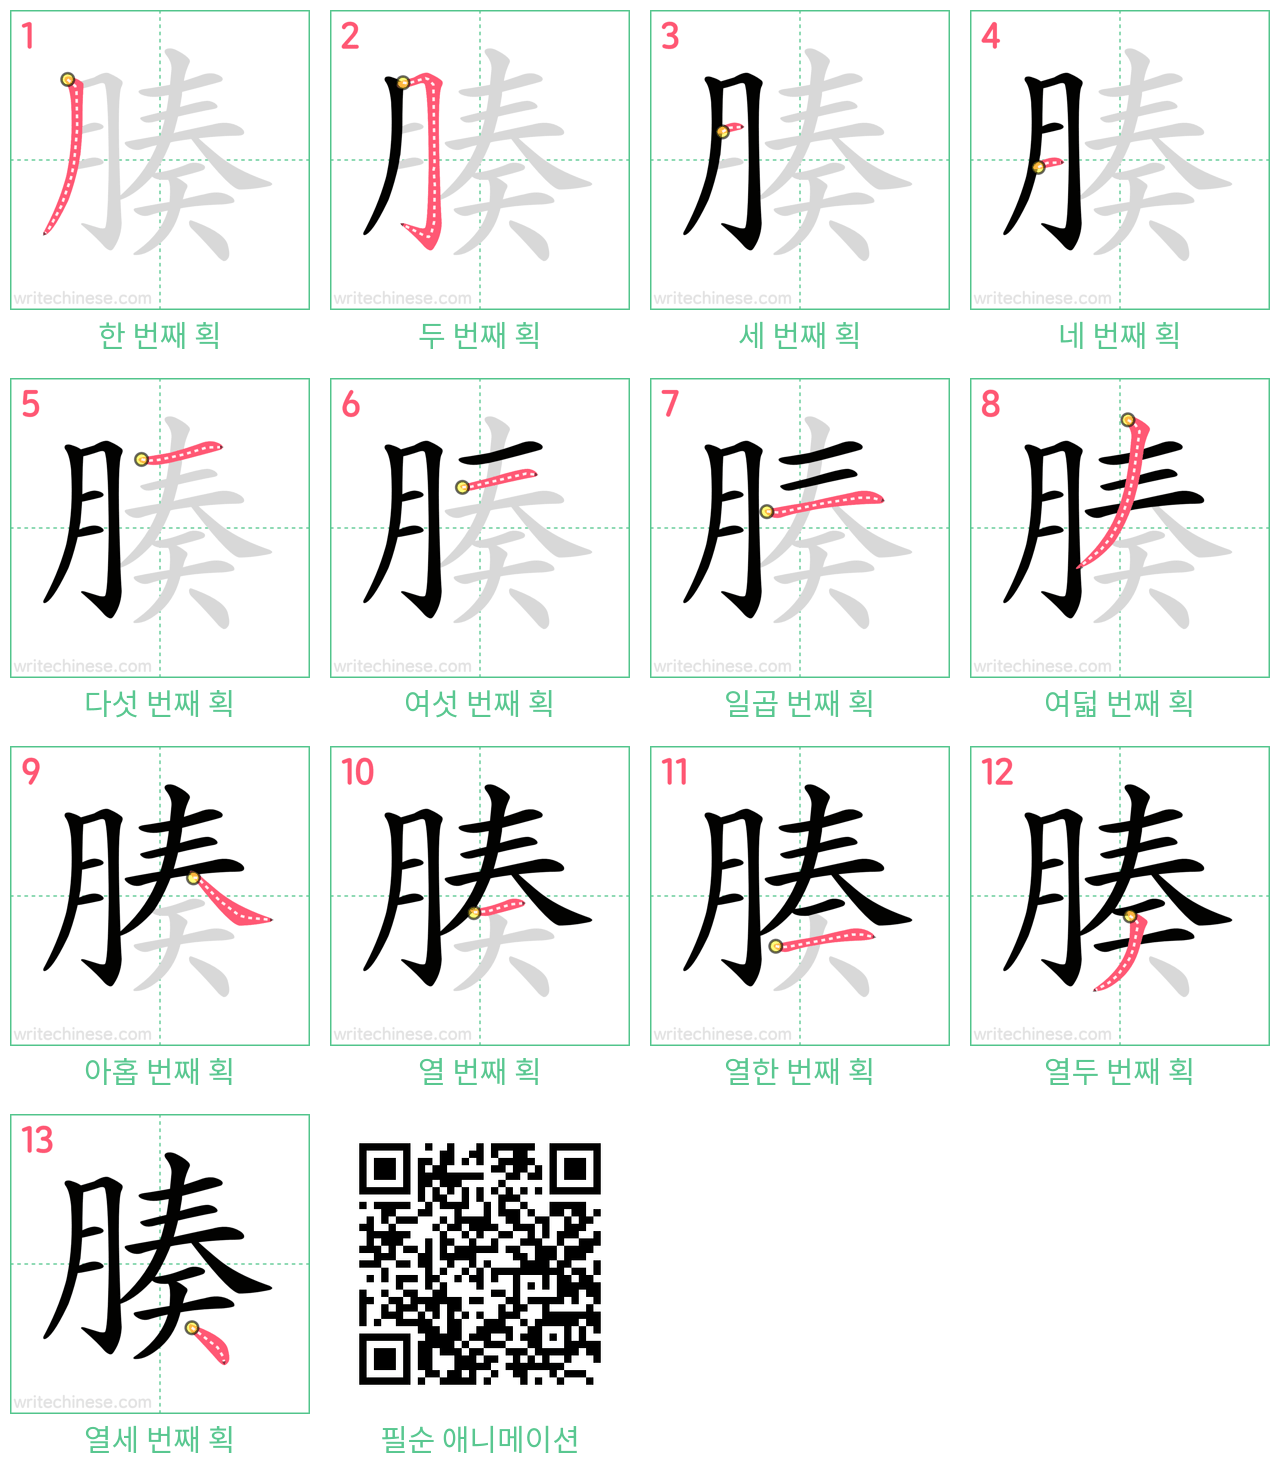 腠 step-by-step stroke order diagrams